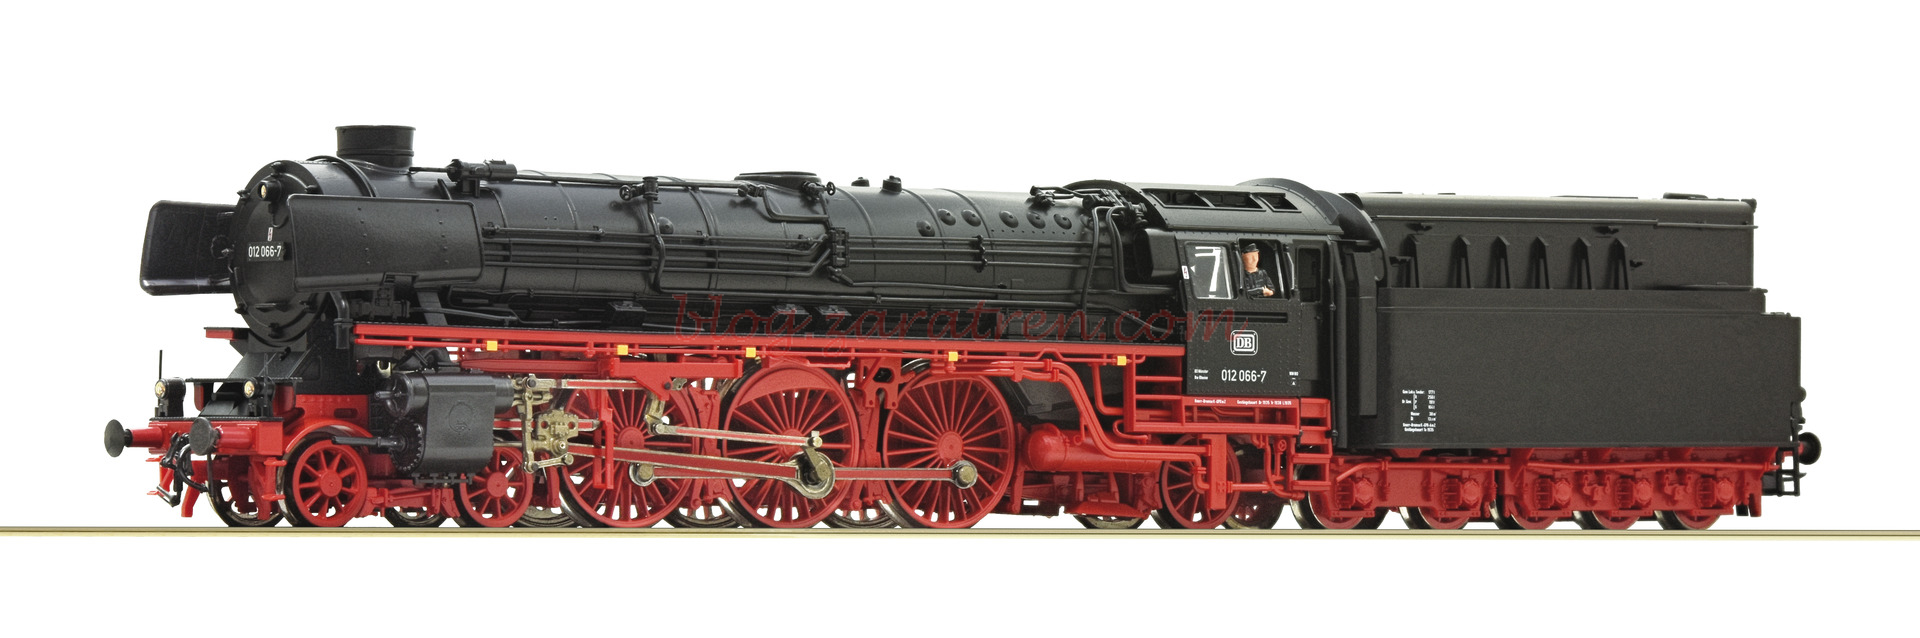 Roco – Locomotora de Vapor Clase 012, DB, Epoca IV, D. Sonido, Escala H0. Ref: 70341